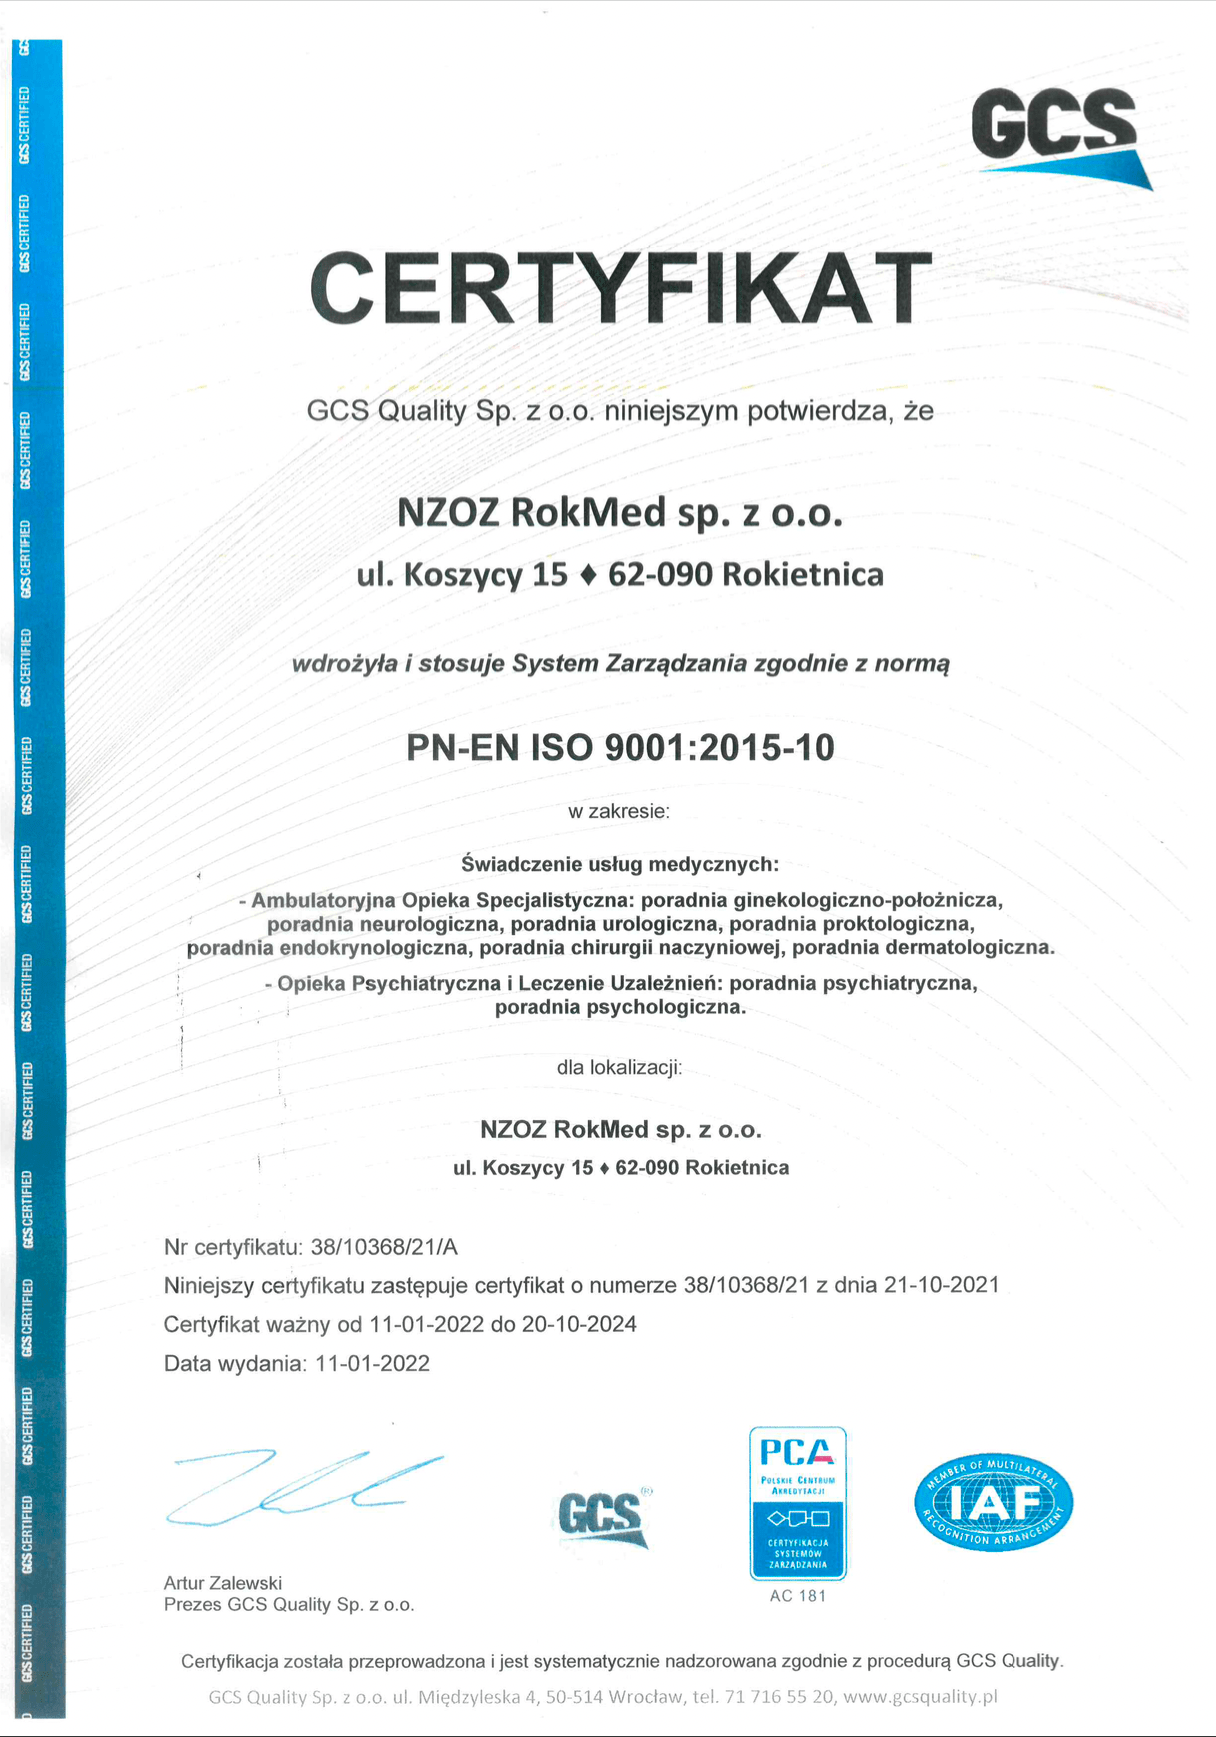 Certyfikat potwierdzający wdrożenie ISO 9001 przez NZOZ ROKMED